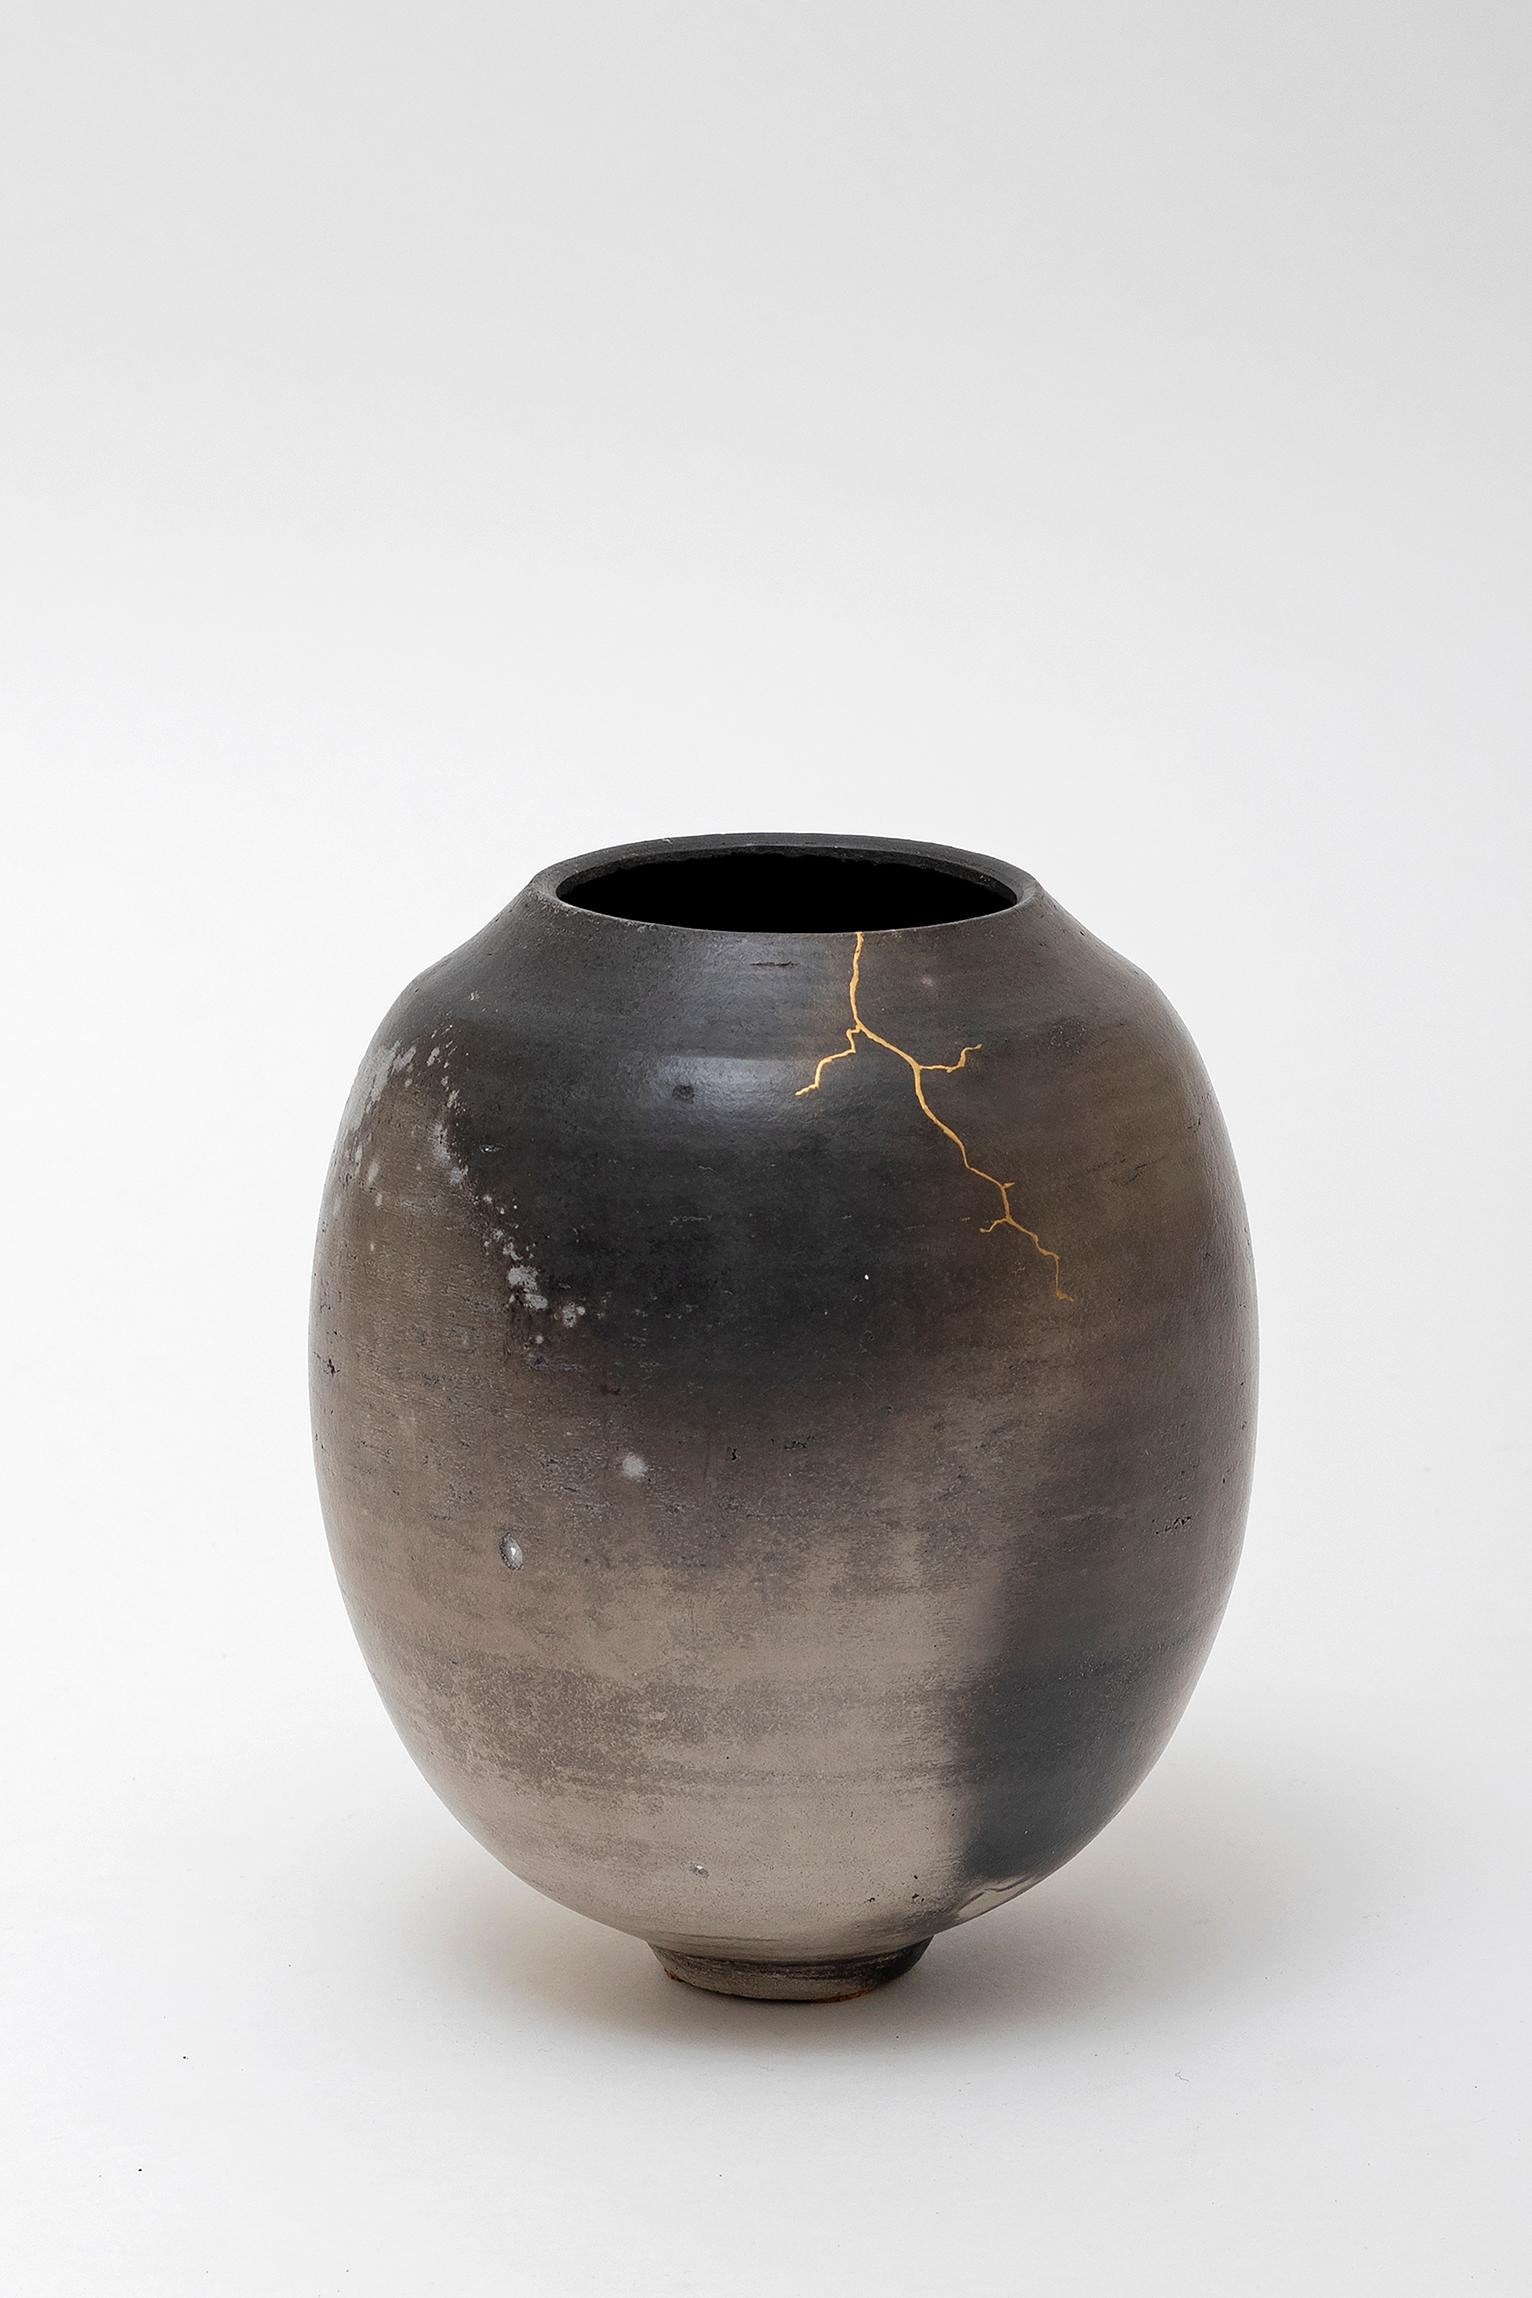 Un vase de Karen Swami:: 2018. 
Un grès unique tourné au tour:: cuit à la fumée:: ciré et retravaillé avec de la laque végétale japonaise 